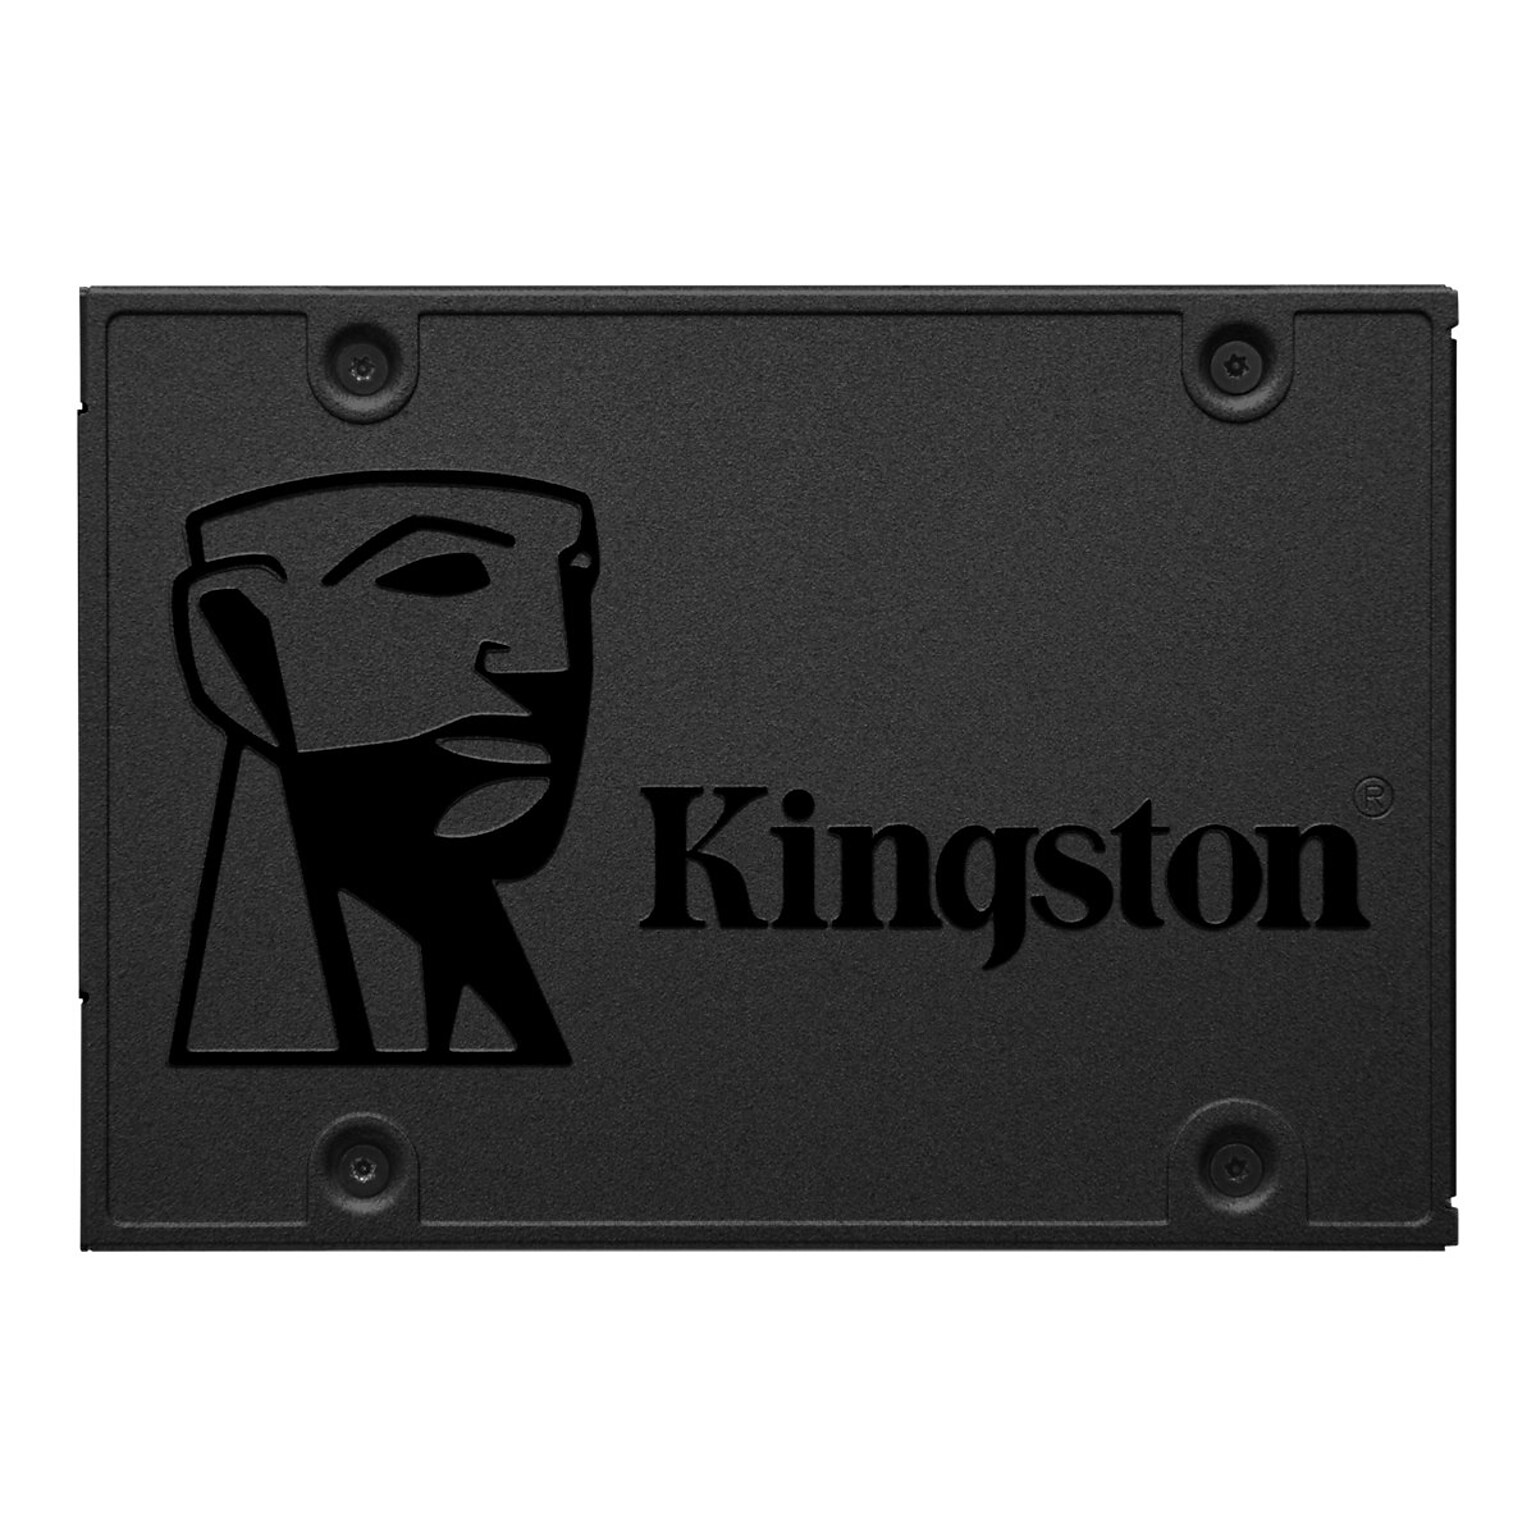 Kingston Q500 120GB 2.5 SATA III Internal Solid State Drive, TLC (SQ500S37/120G)